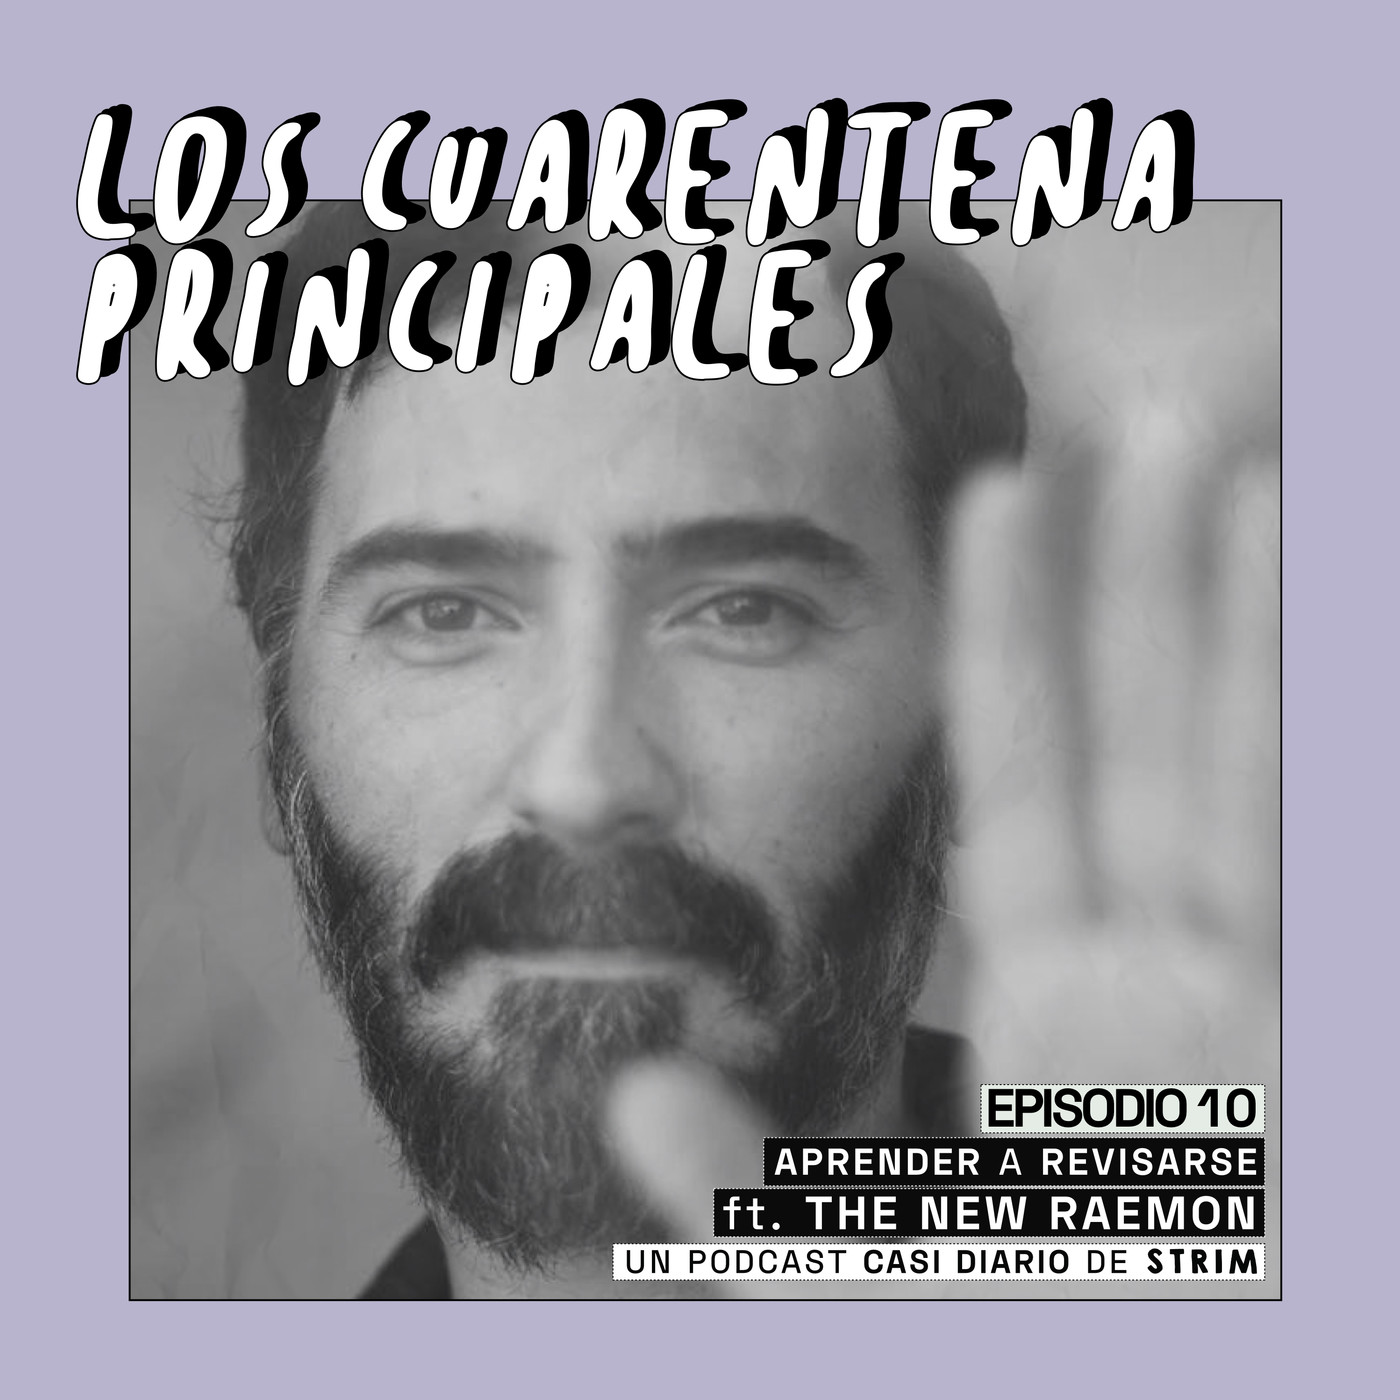 Aprender a revisarse ft. THE NEW RAEMON | 1x10 Los Cuarentena Principales